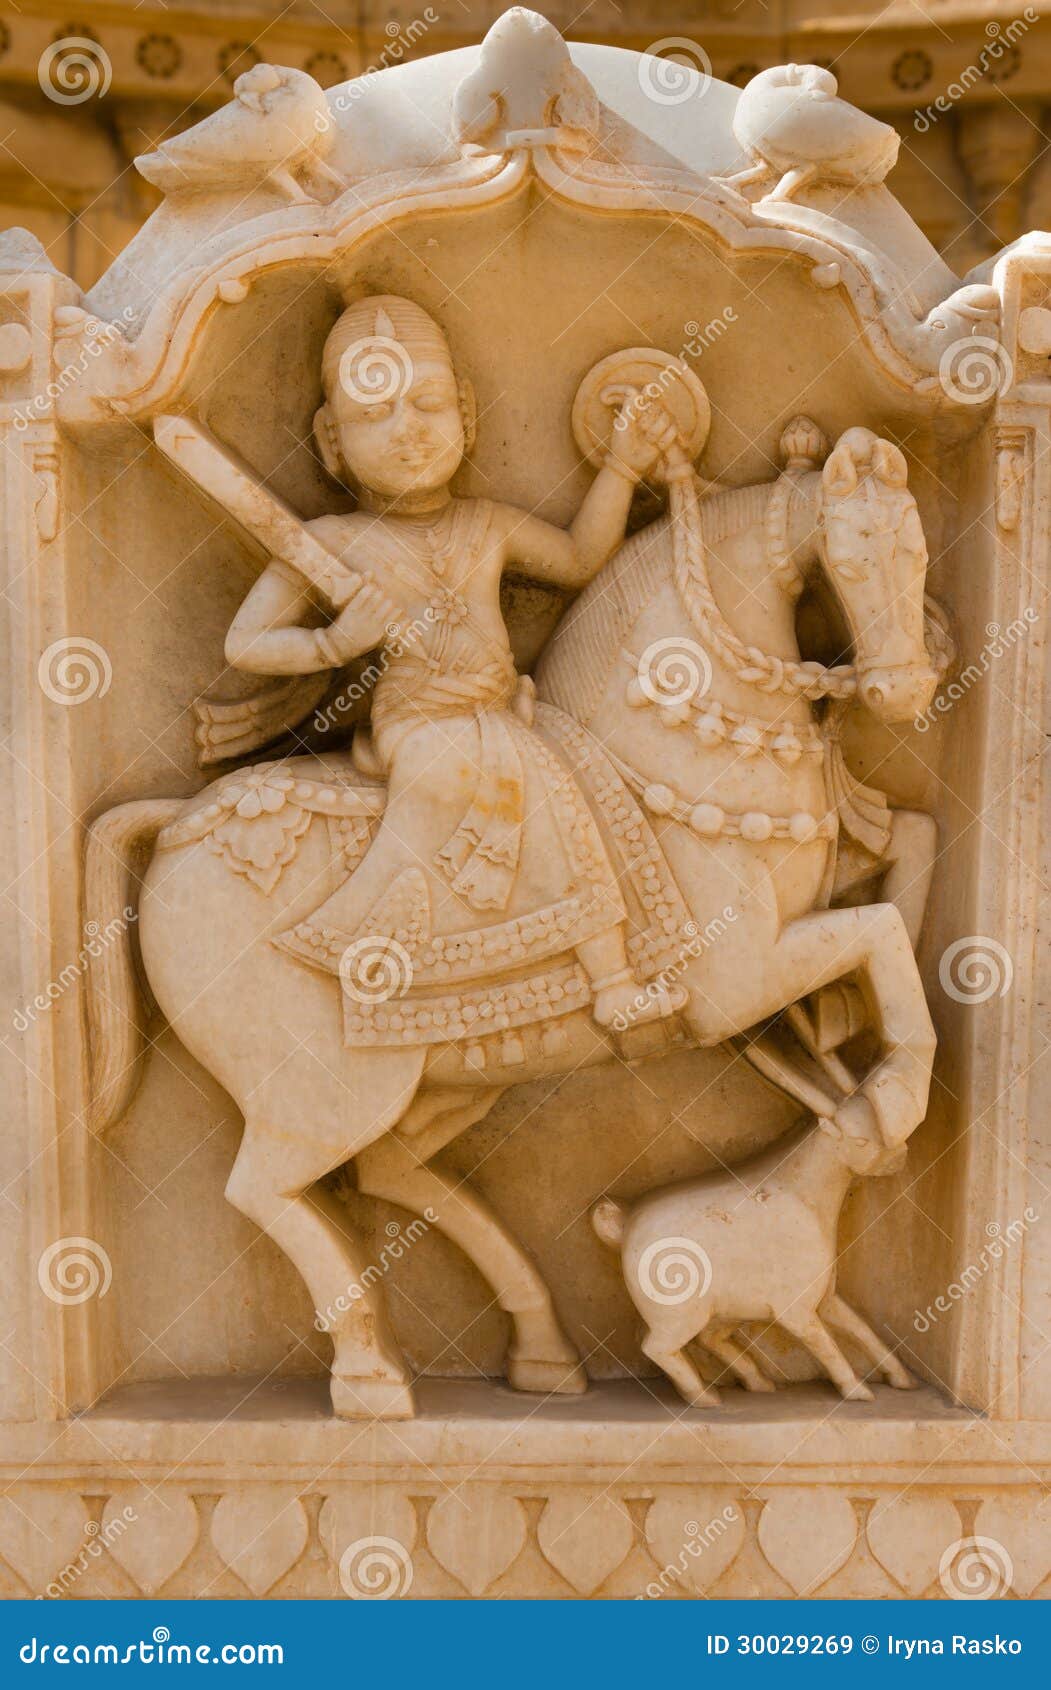 maharaja image in bada bagh ruins, india